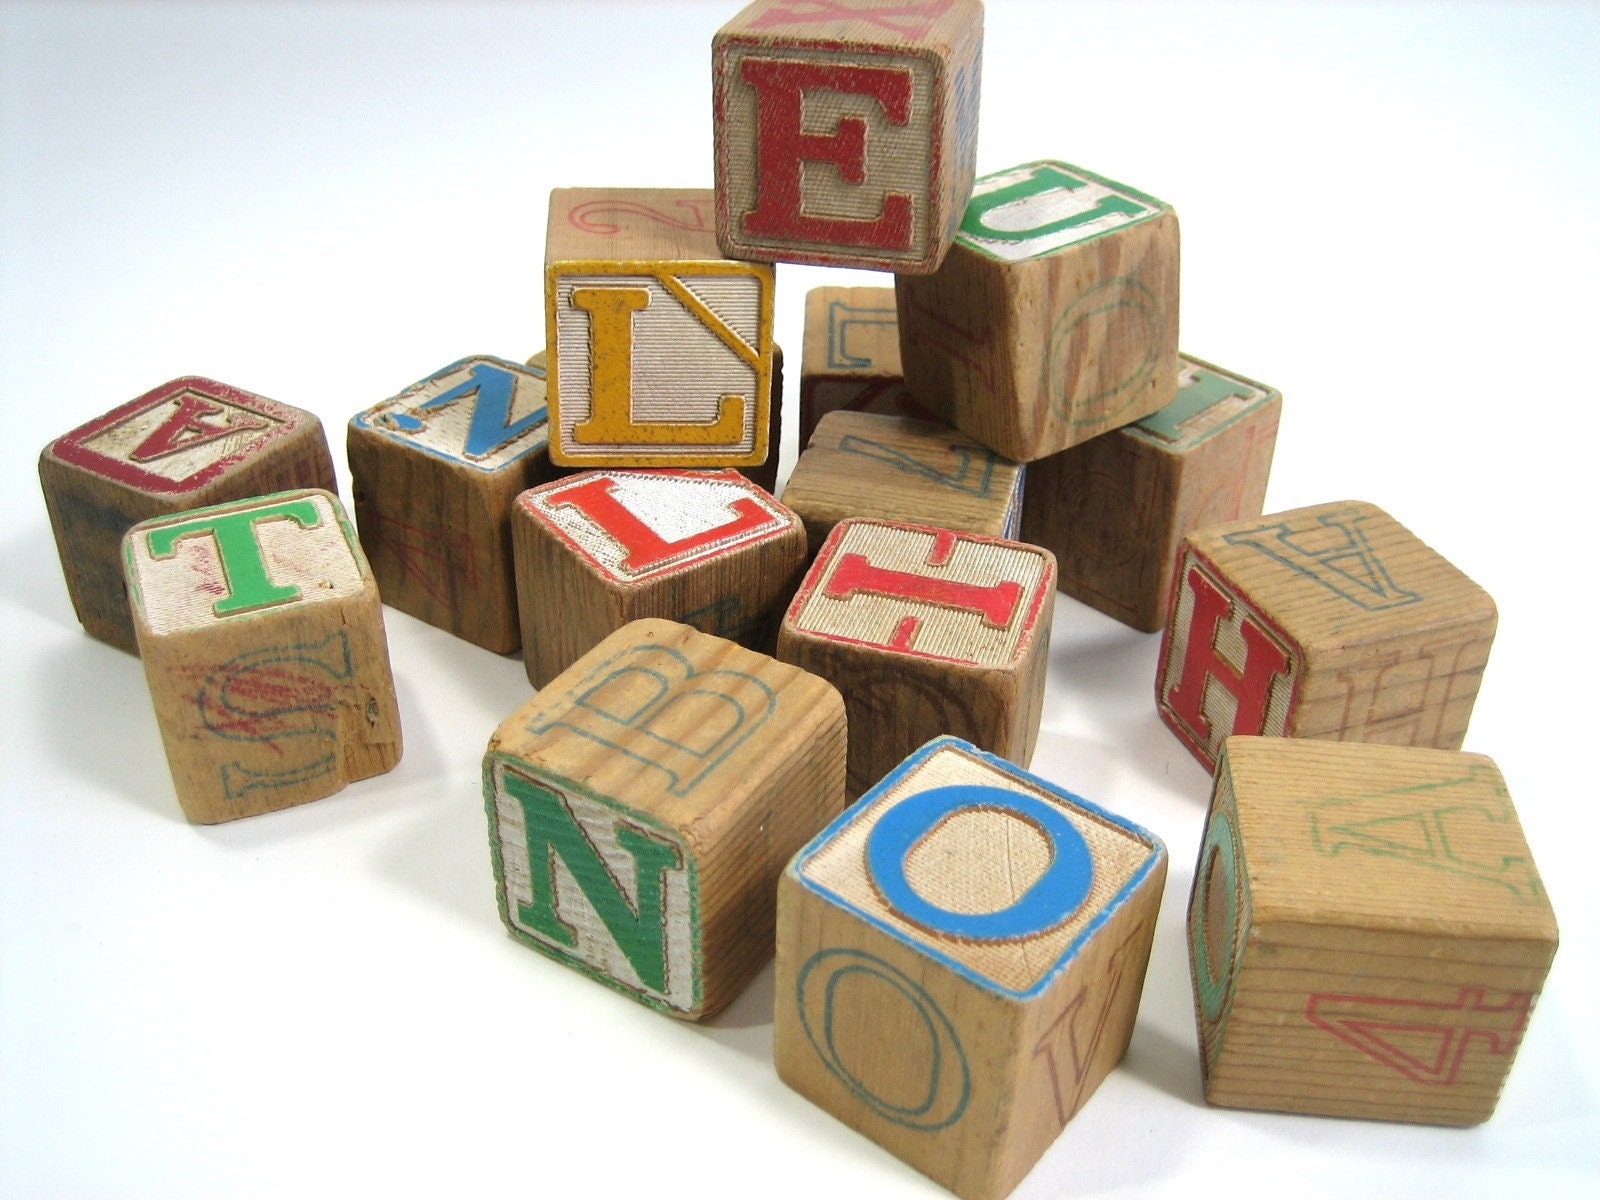 alphabet wooden blocks for kids